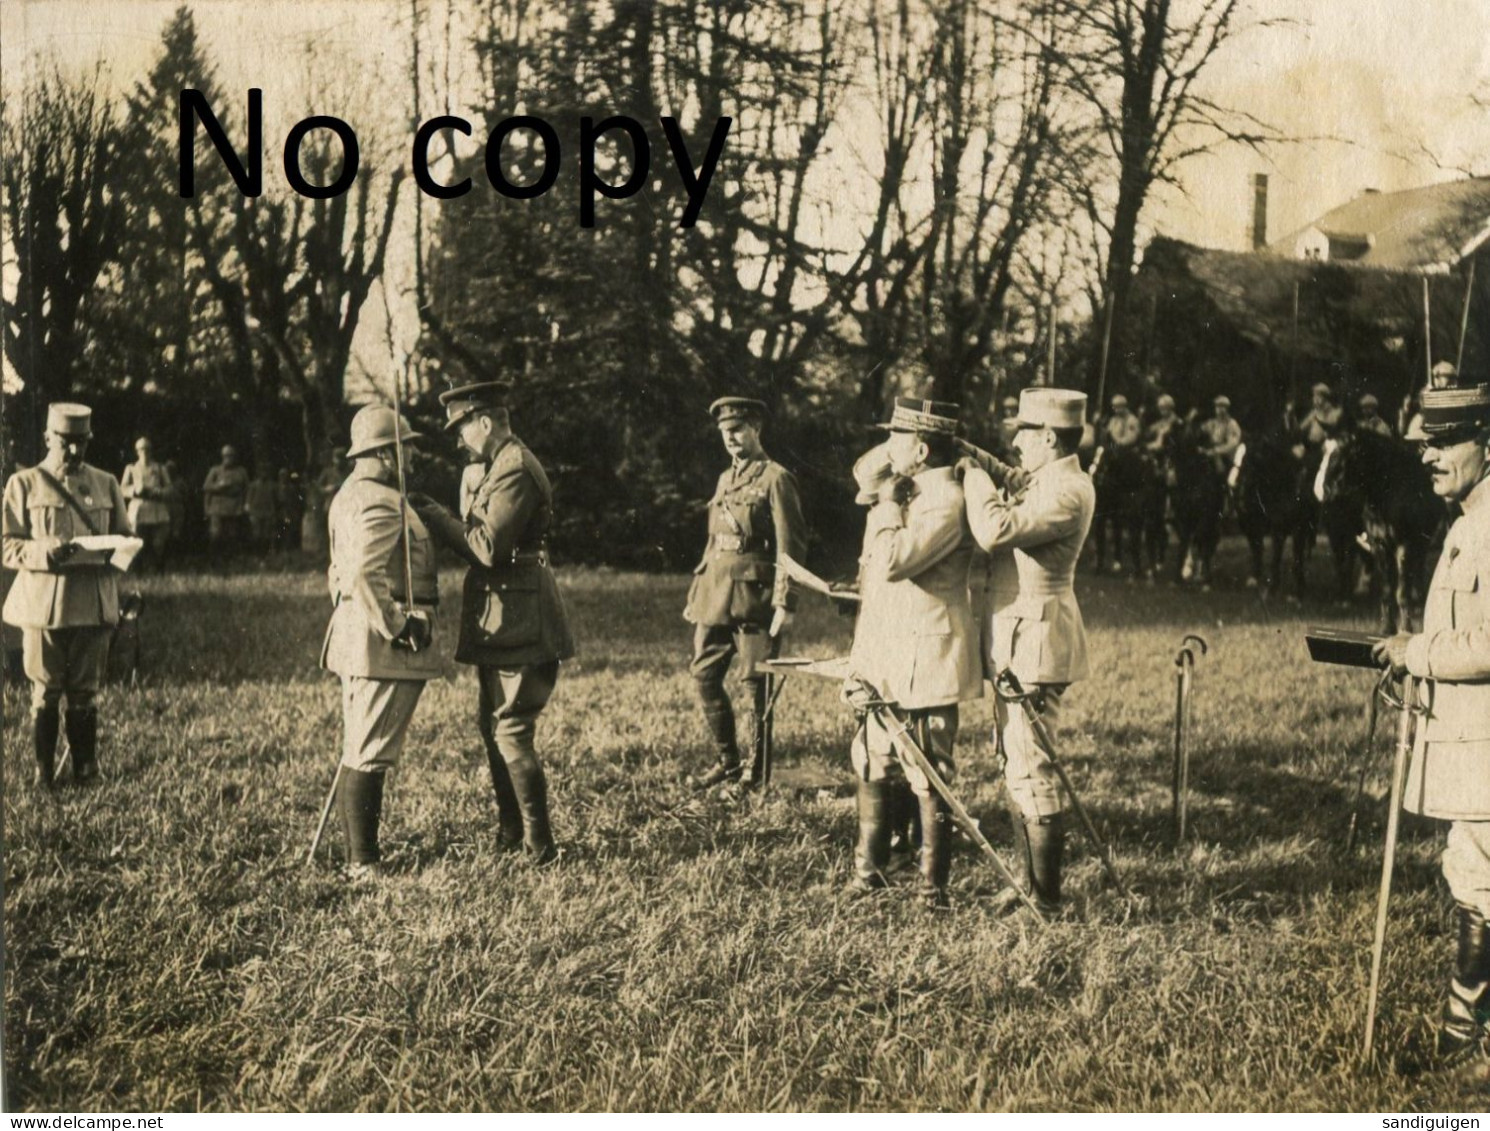 PHOTO FRANCAISE - OFFICIERS AU QG DE LA 5e ARMEE A JONCHERY SUR VESLE PRES DE TINQUEUX - REIMS MARNE GUERRE 1914 1918 - Guerra, Militari